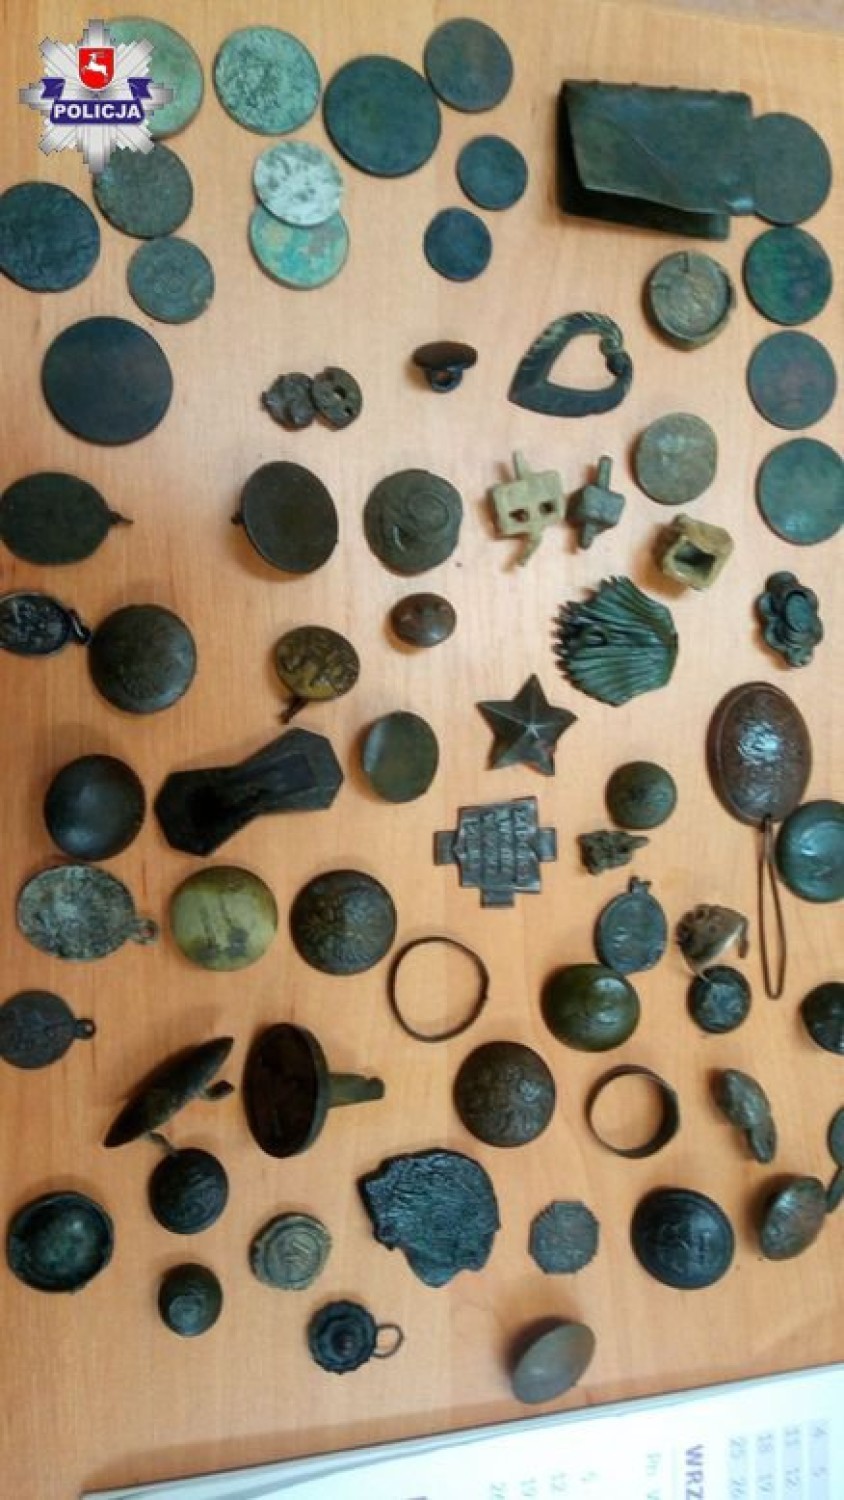 Policjanci z Puław zatrzymali poszukiwacza skarbów. Chodził z wykrywaczem metali i ukrywał to, co znalazł (ZDJĘCIA)